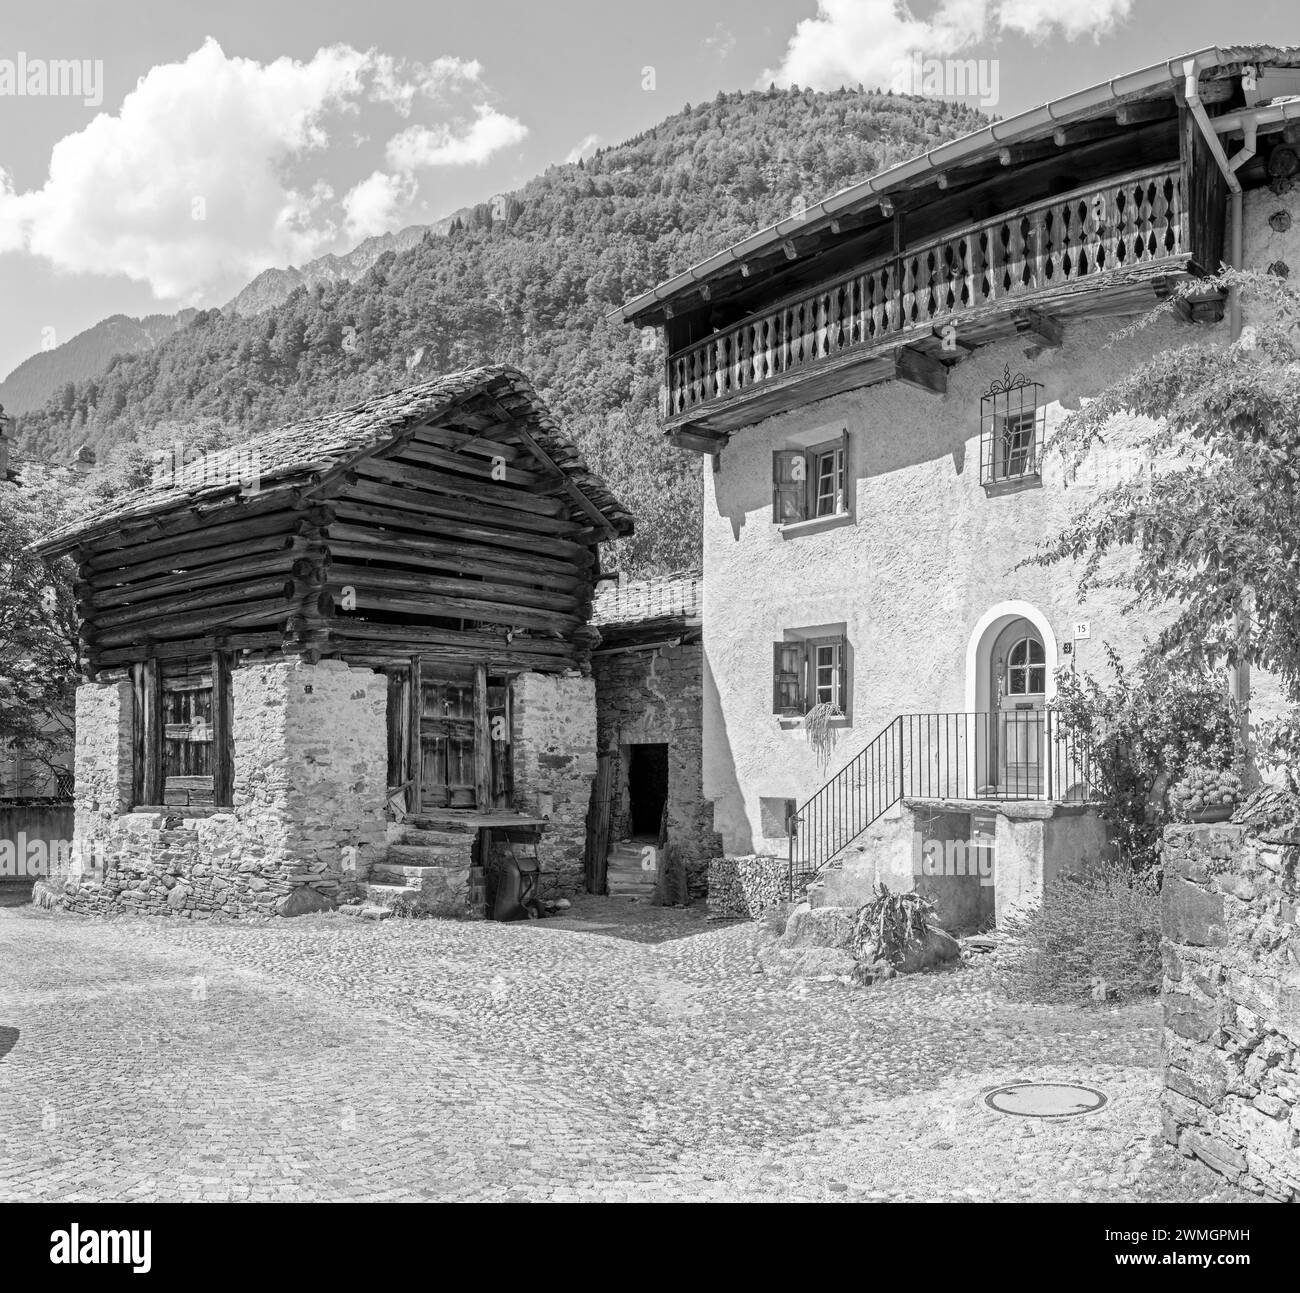 Die ländliche Architektur des Dorfes Bondo im Bregaglia Range - Schweiz. Stockfoto